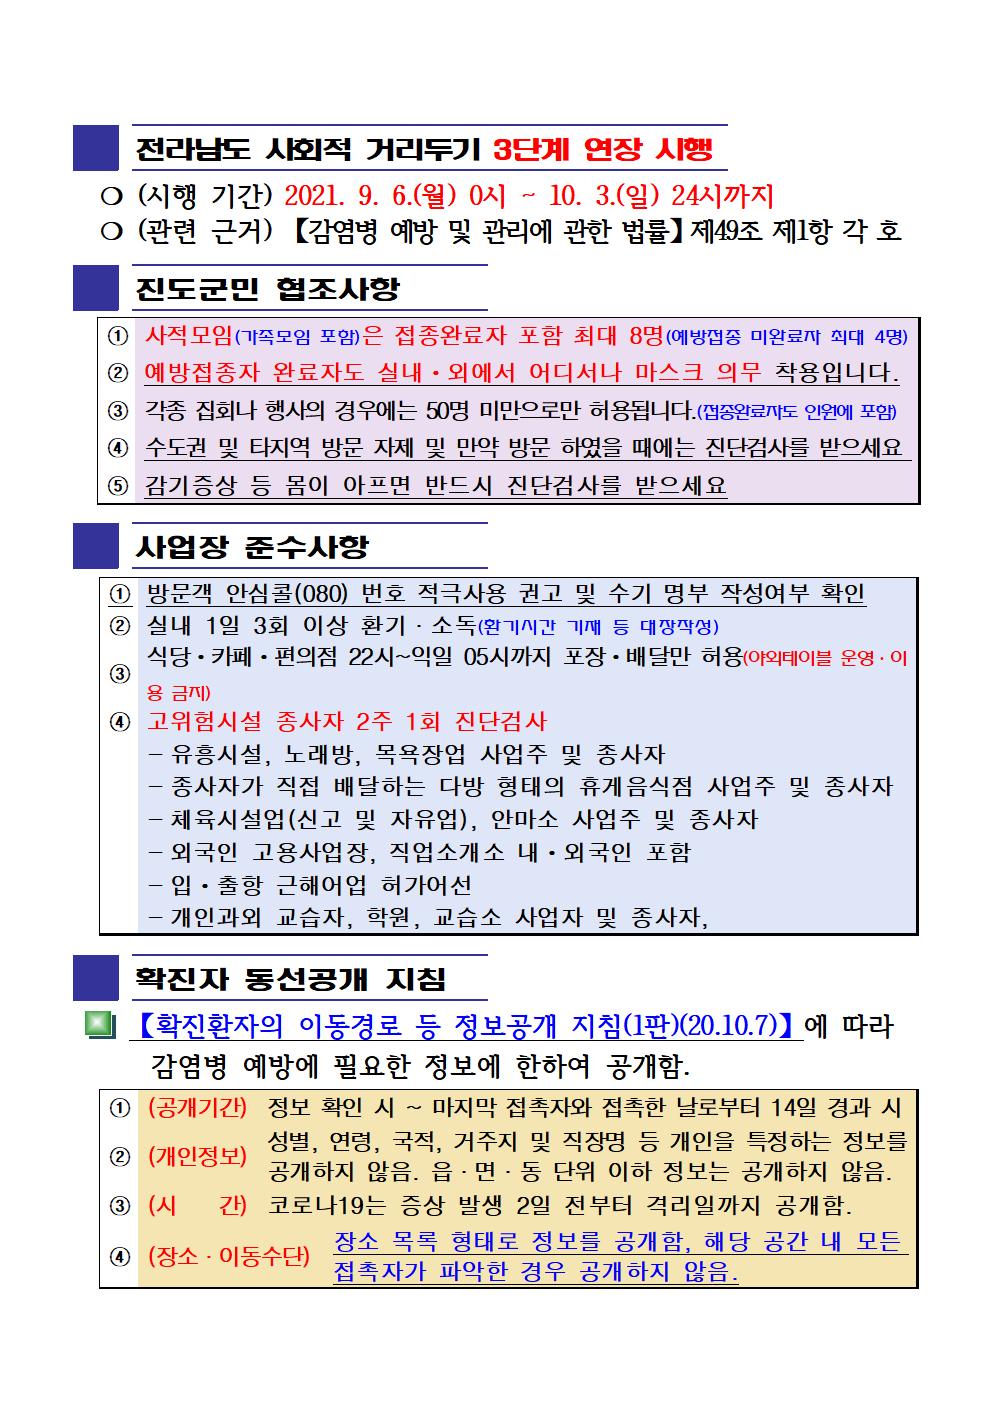 2021년 코로나19 대응 일일상황보고(9월 24일 24시 기준) 첨부#2